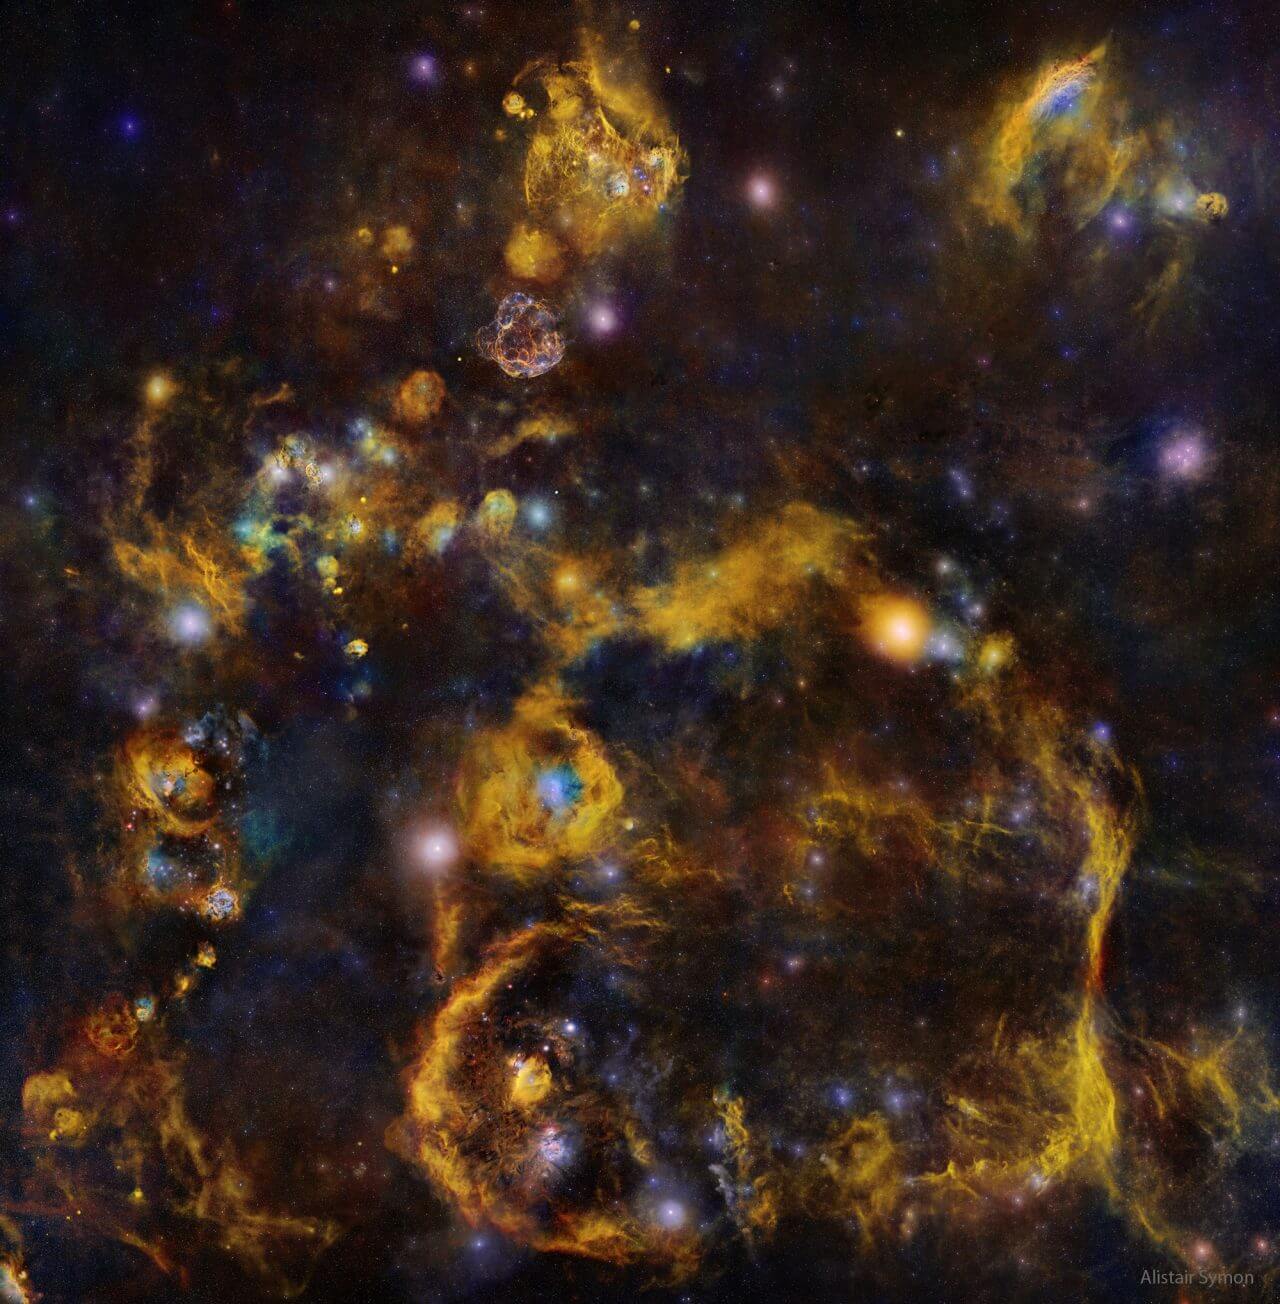 【▲アリゾナ州で撮影された星・星雲の数々（Credit: Alistair Symon）】